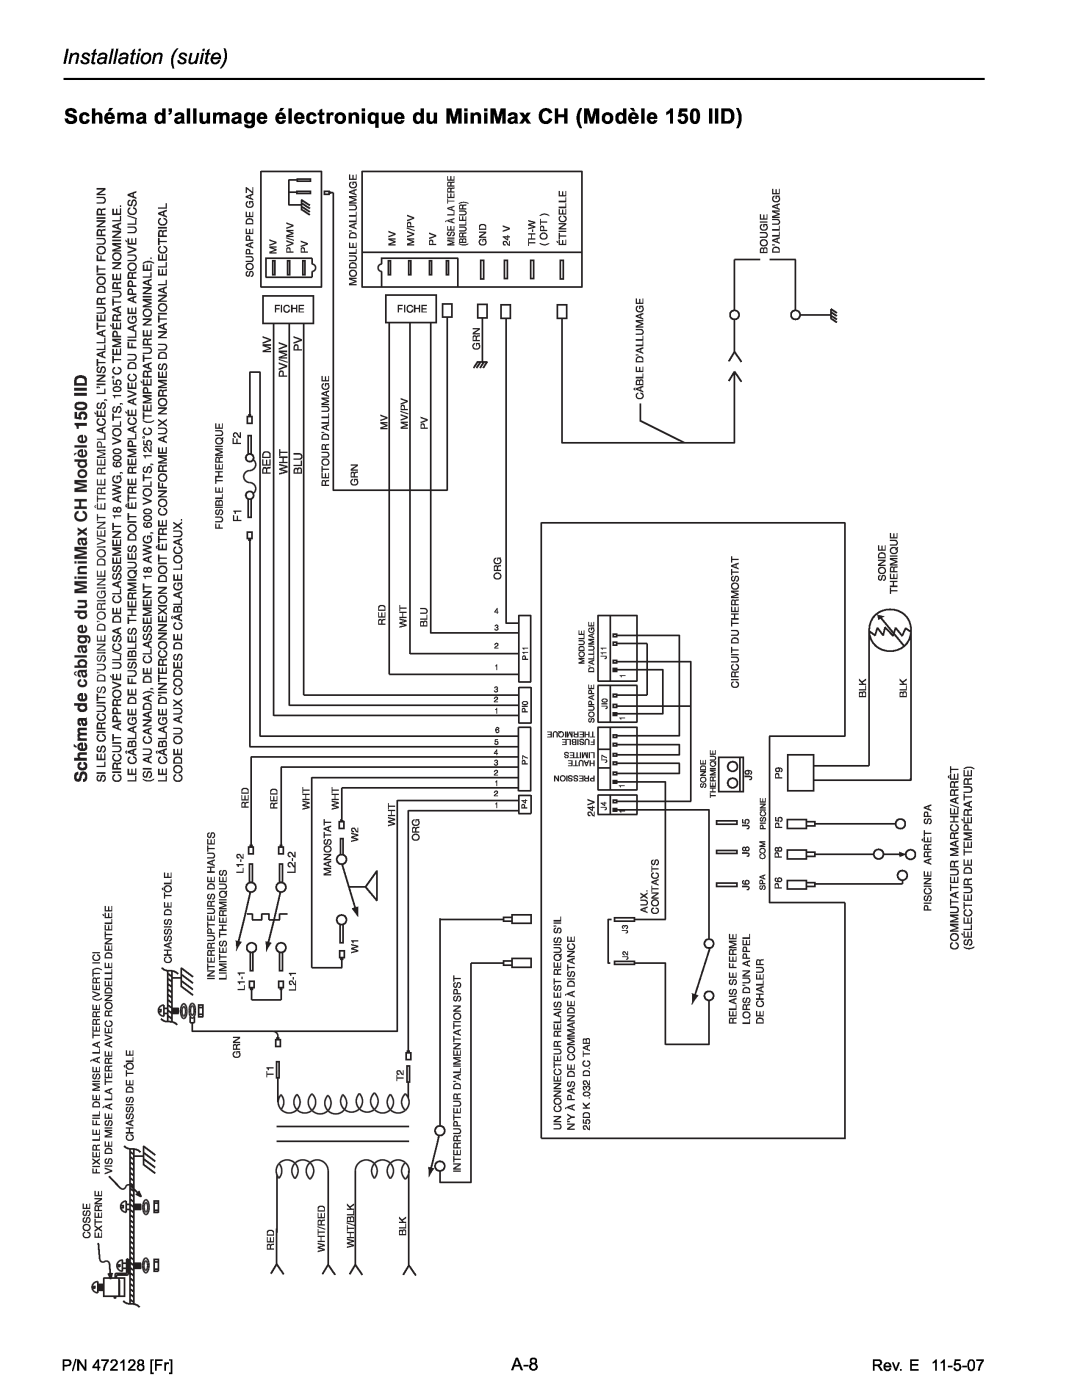 Pentair Hot Tub manual Schéma d’allumage électronique du MiniMax CH Modèle, Installation suite, P/N 472128 Fr, Rev. E, L2-2 